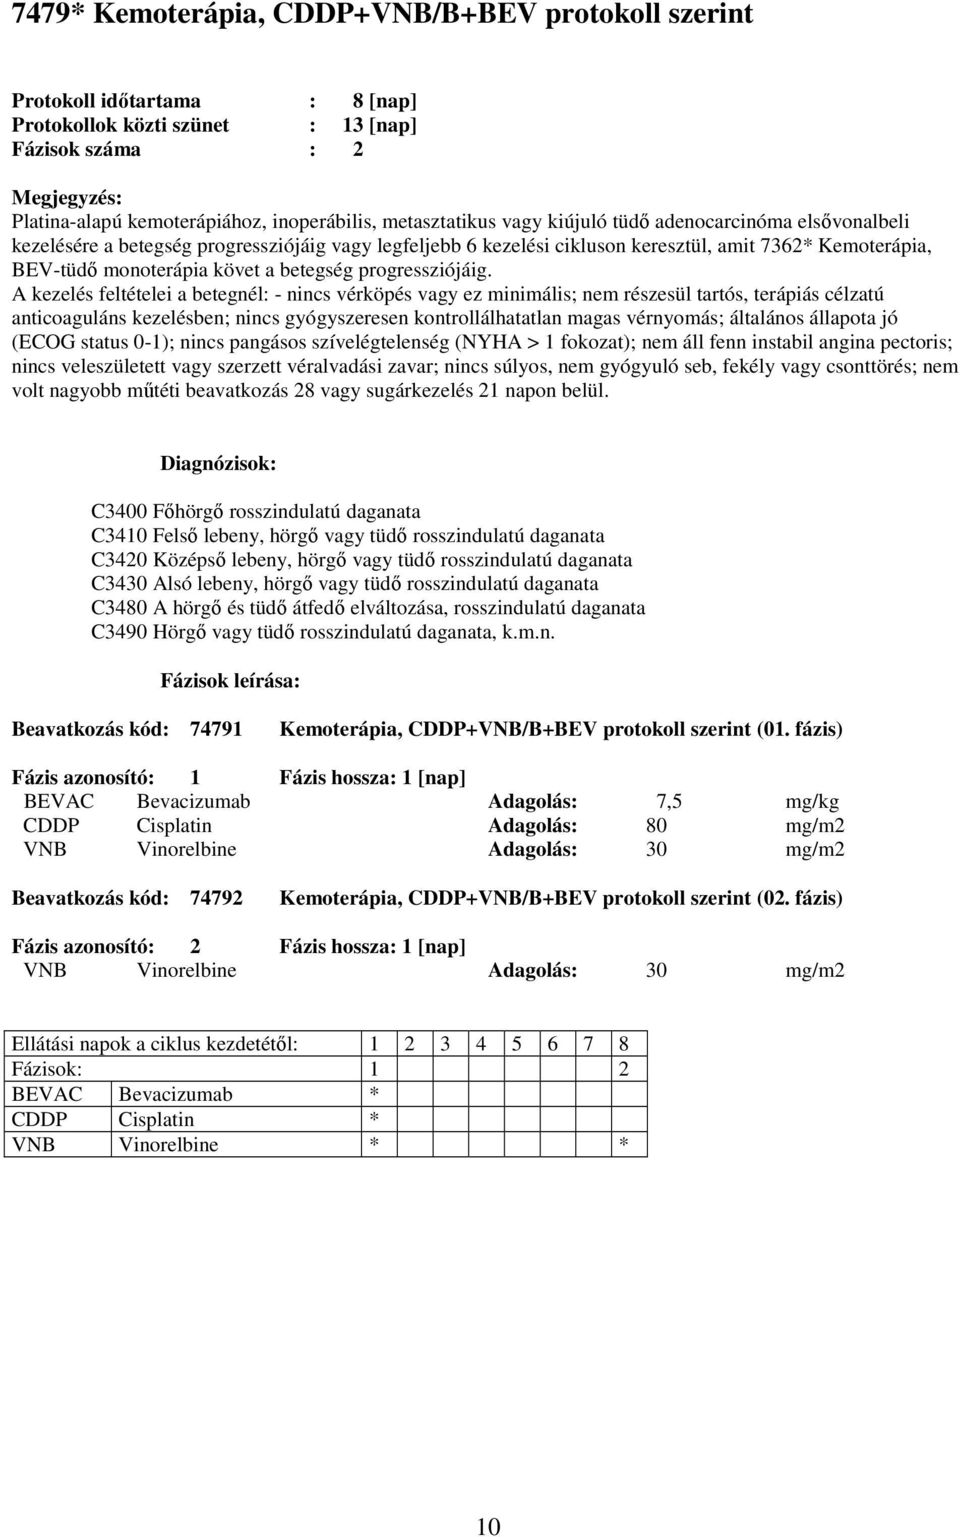 fázis) CDDP Cisplatin Adagolás: 80 mg/m2 VNB Vinorelbine Adagolás: 30 mg/m2 Beavatkozás kód: 74792 Kemoterápia,